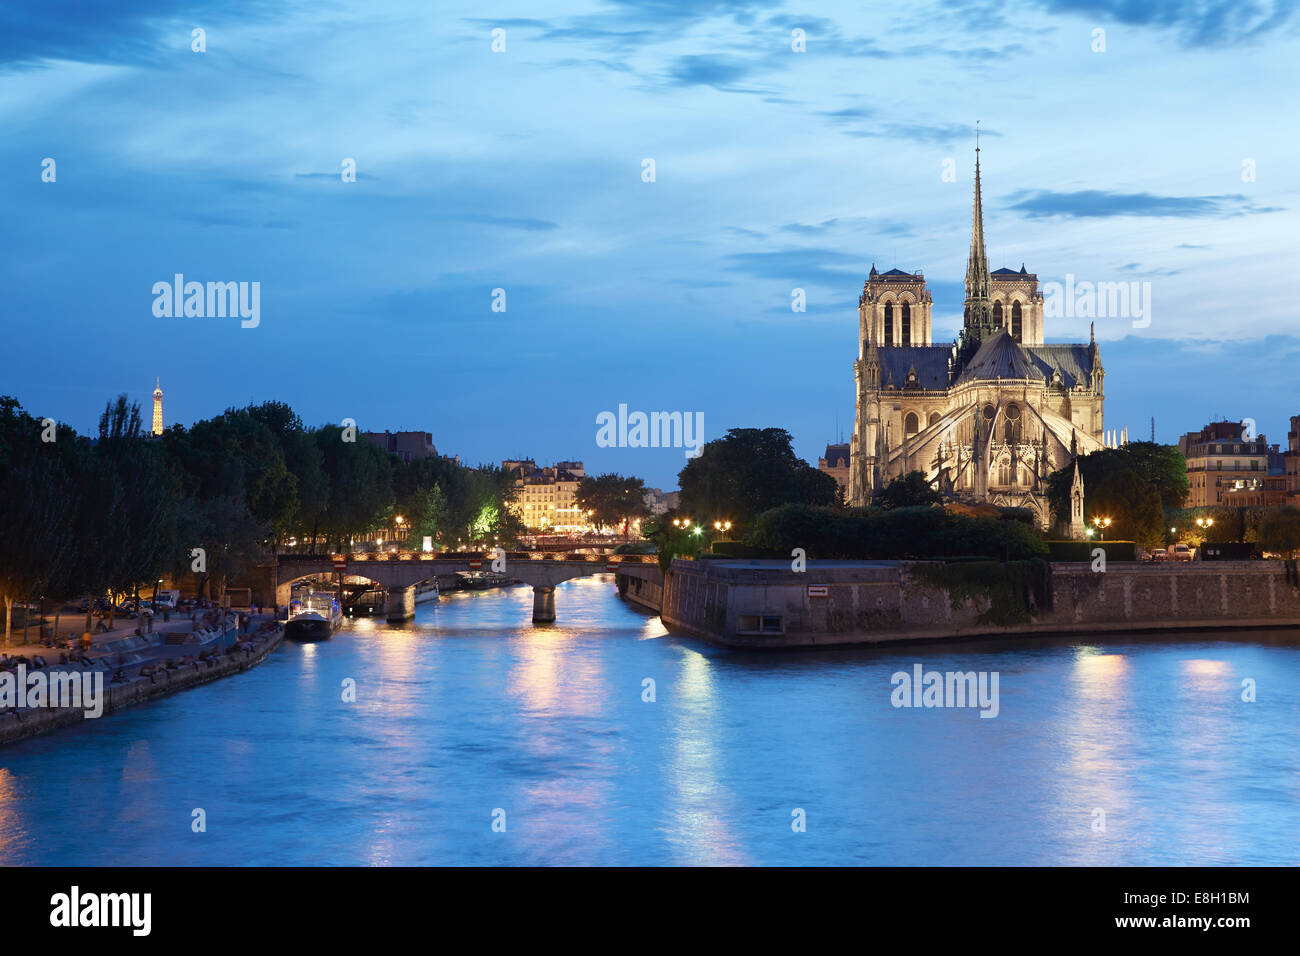 Die Kathedrale von Notre Dame, Paris bei Nacht mit Blick auf den Fluss Seine Stockfoto